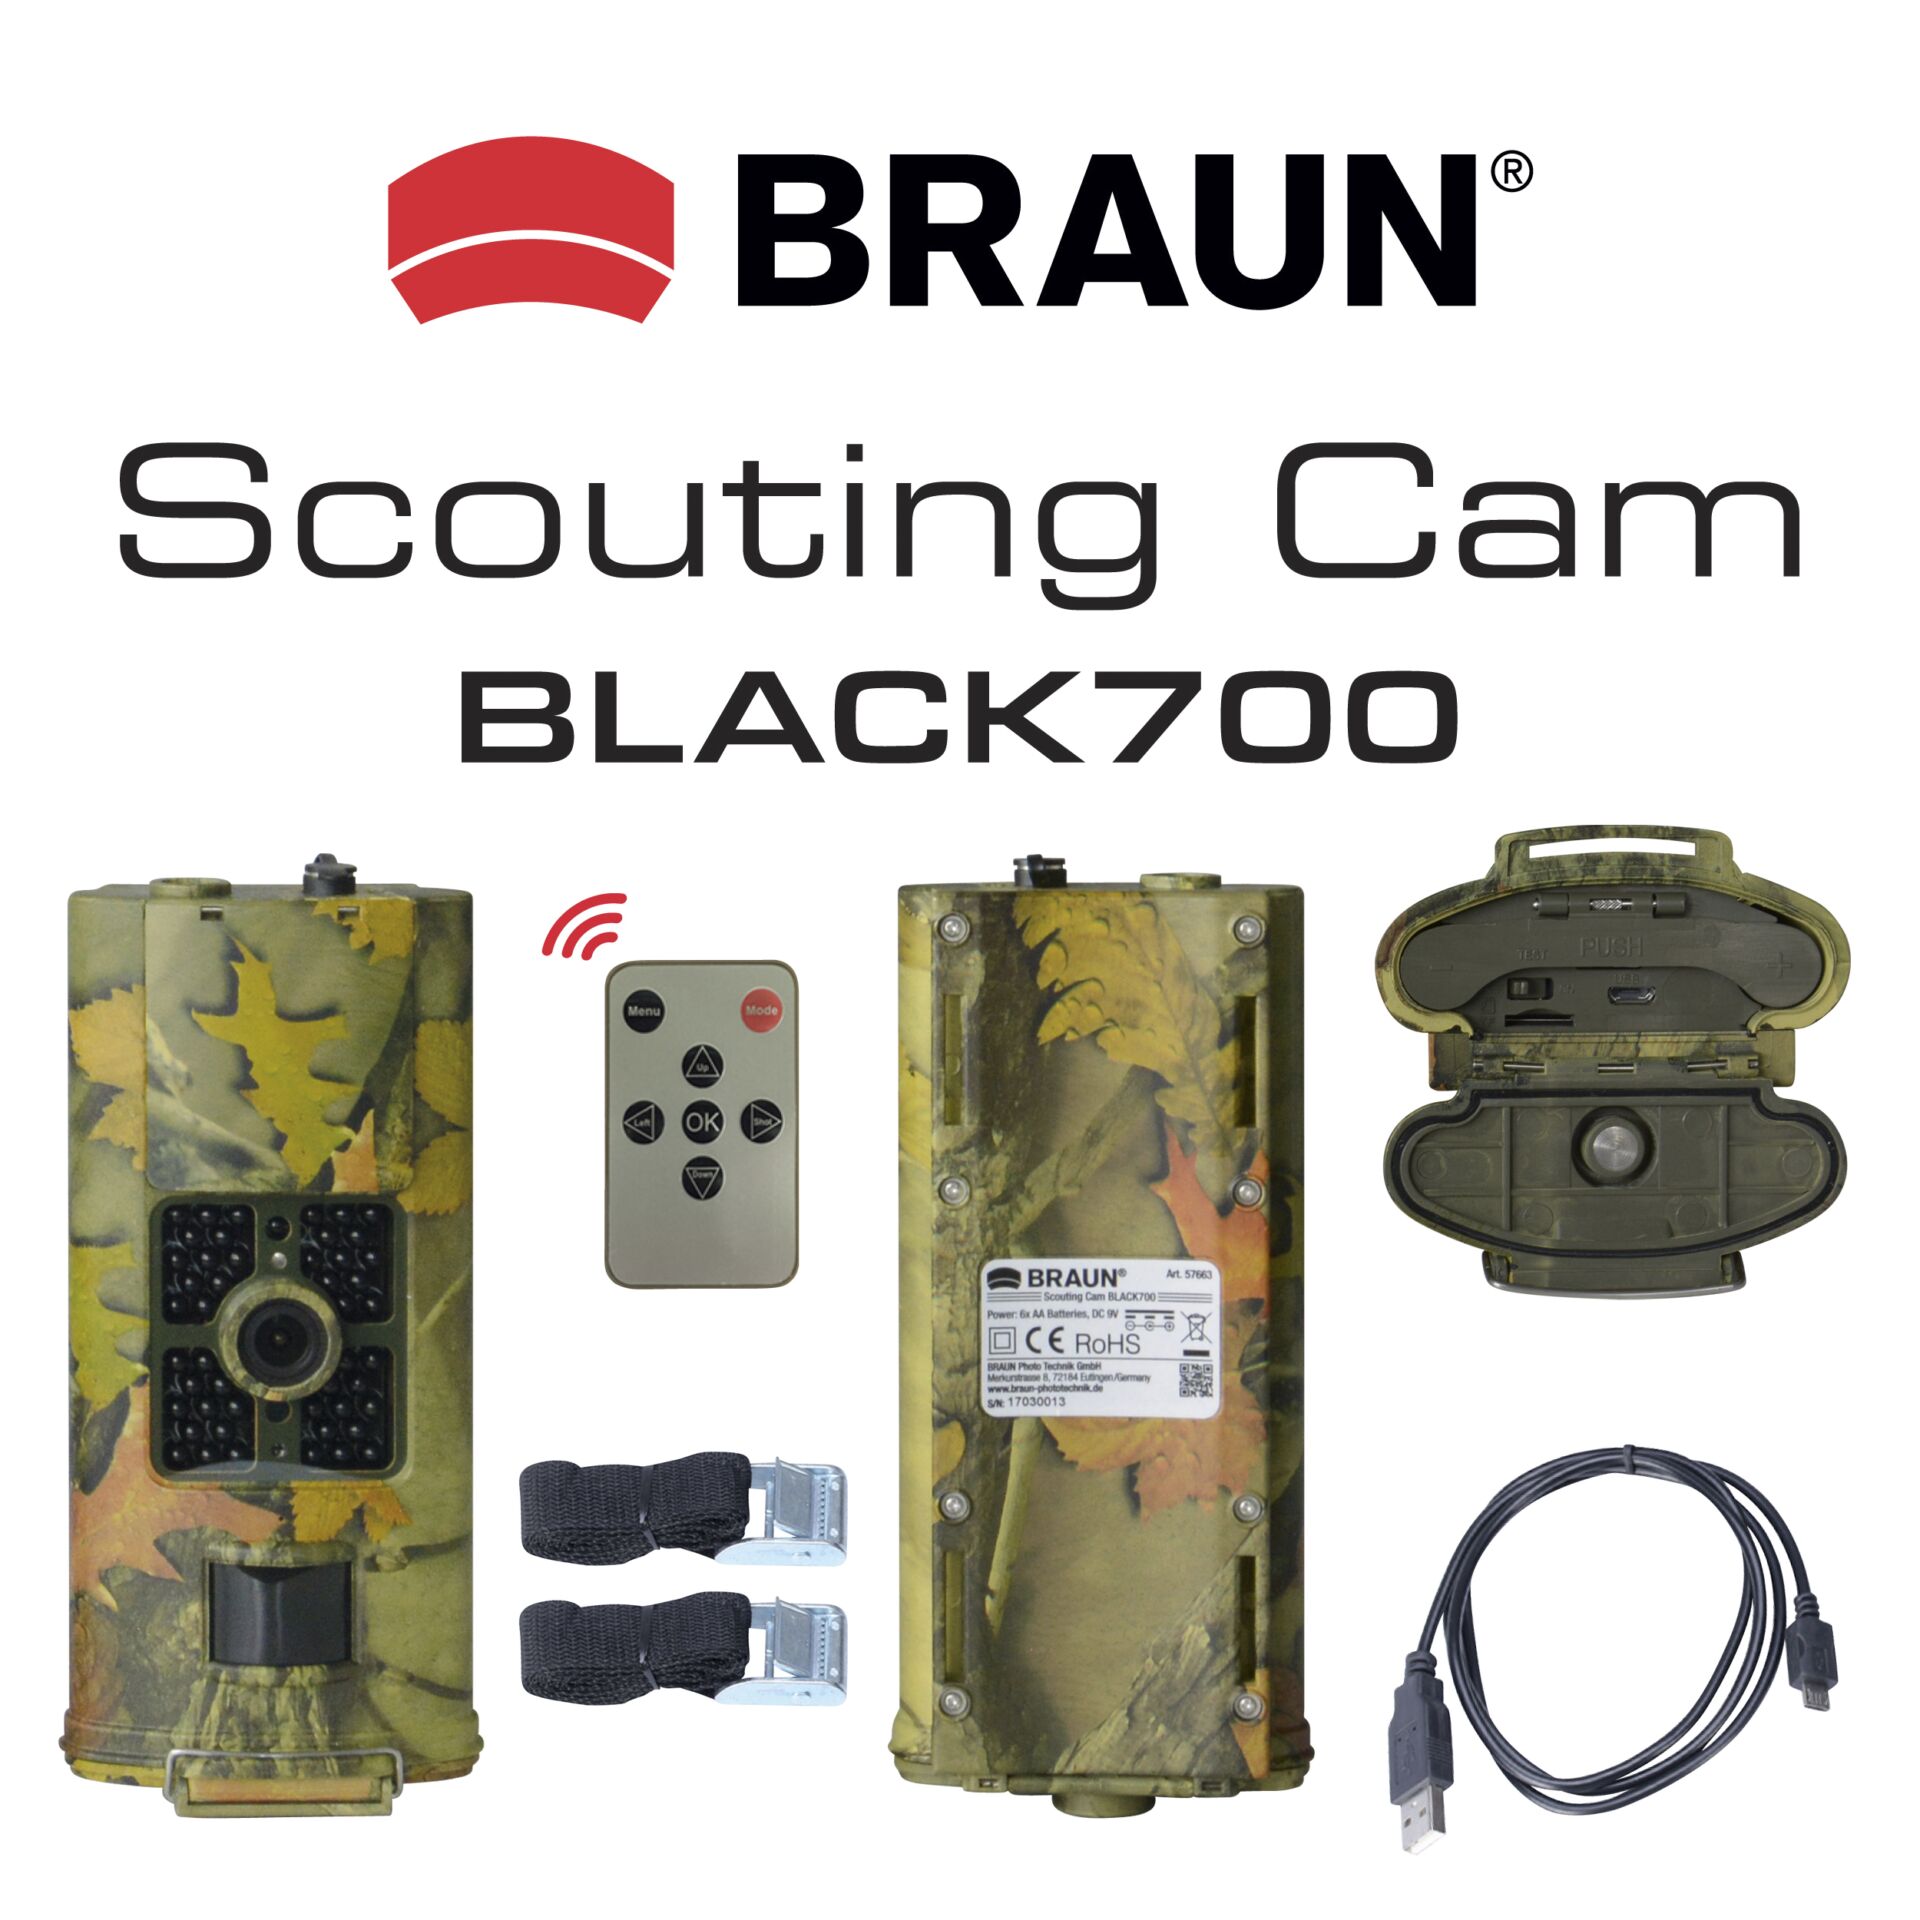 Braun Scouting Cam Black700